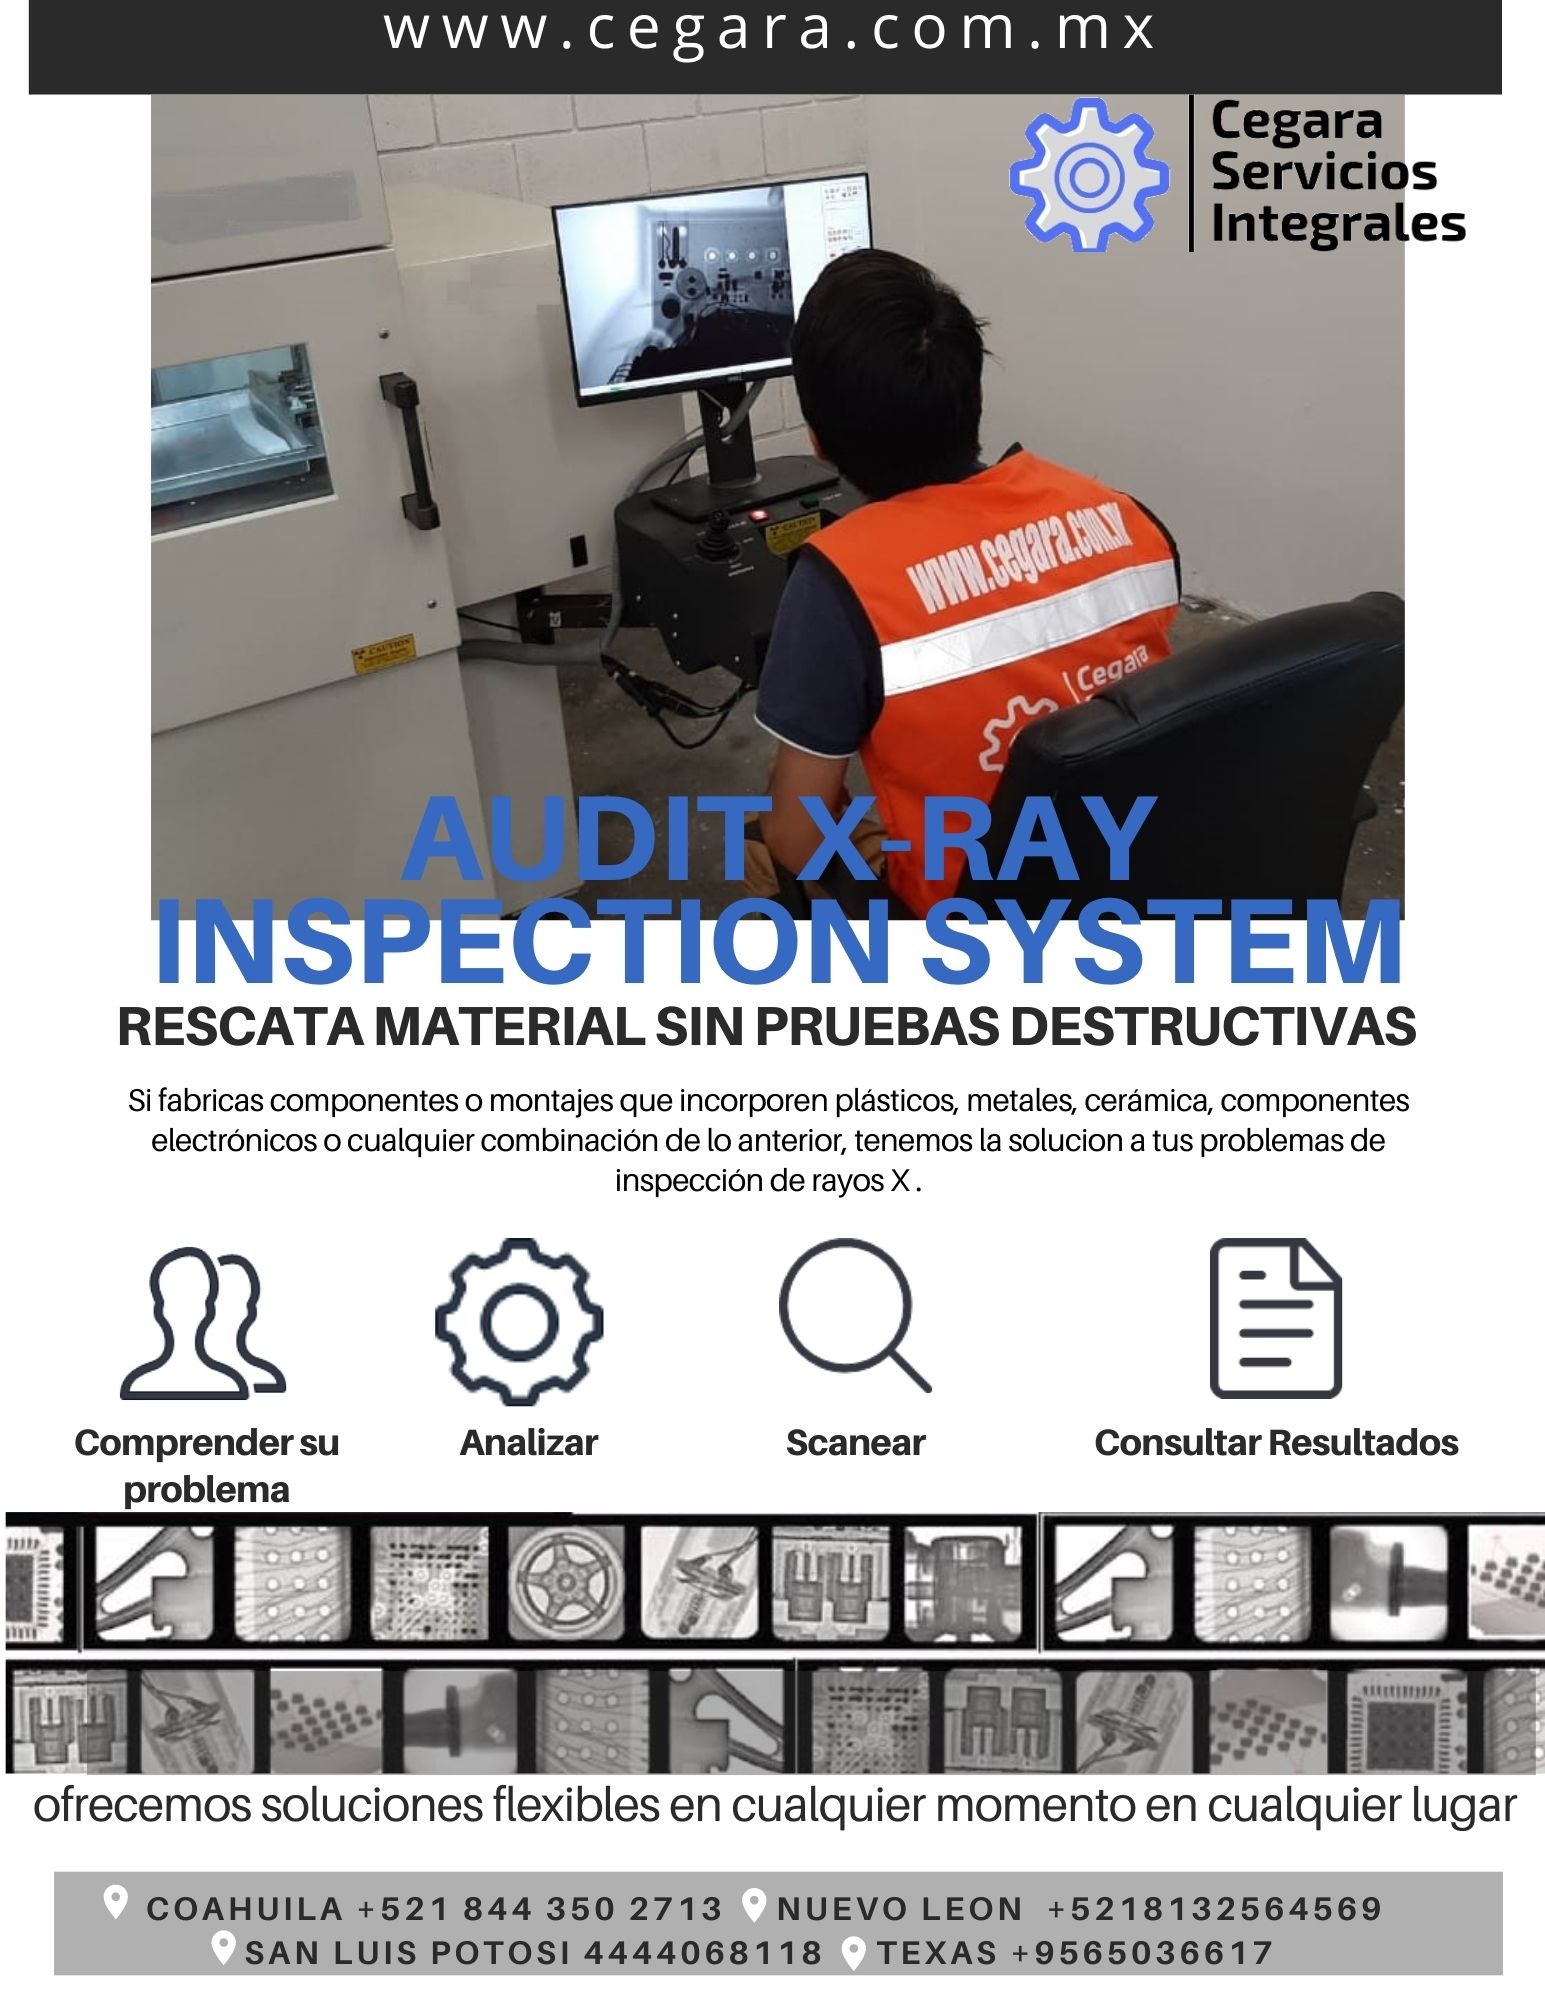 Inspeccion Rayos X Pruebas No Destructivas Cegara Servicios Integrales